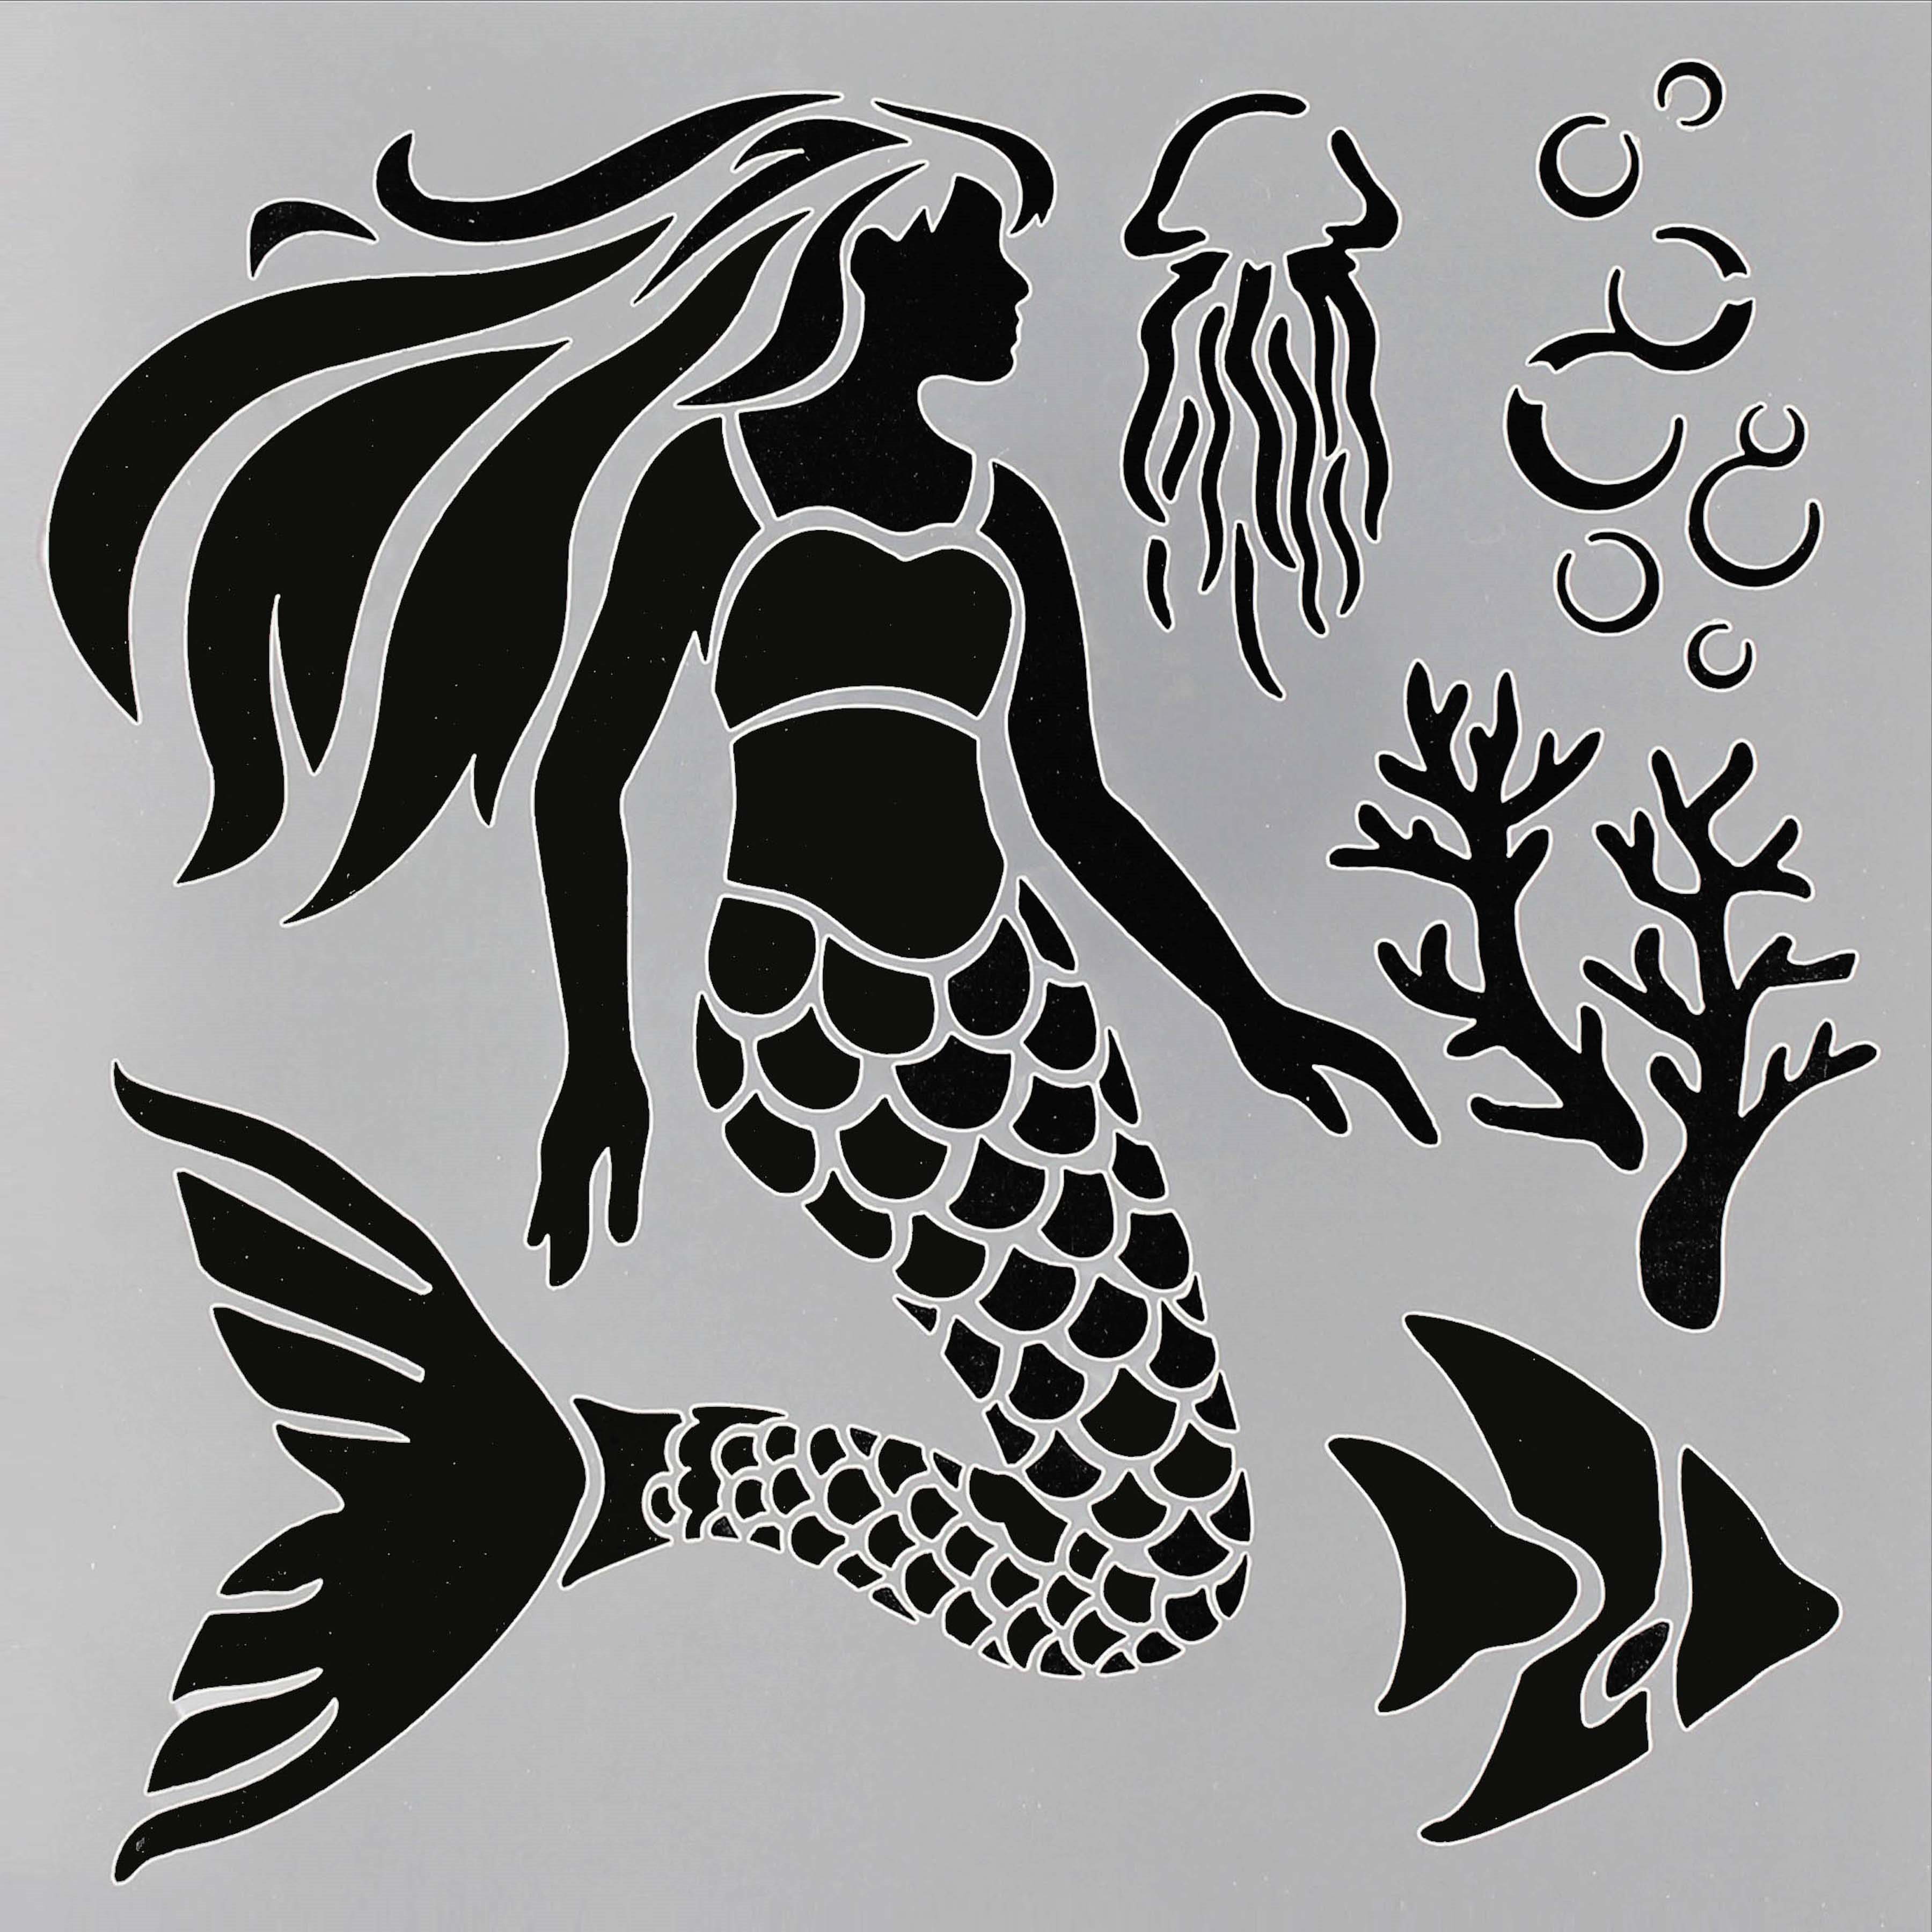 PA Essentials Mermaid Stencil, 12&#x22; x 12&#x22;